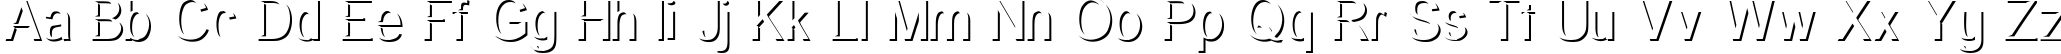 Пример написания английского алфавита шрифтом Primary Elector Platinum